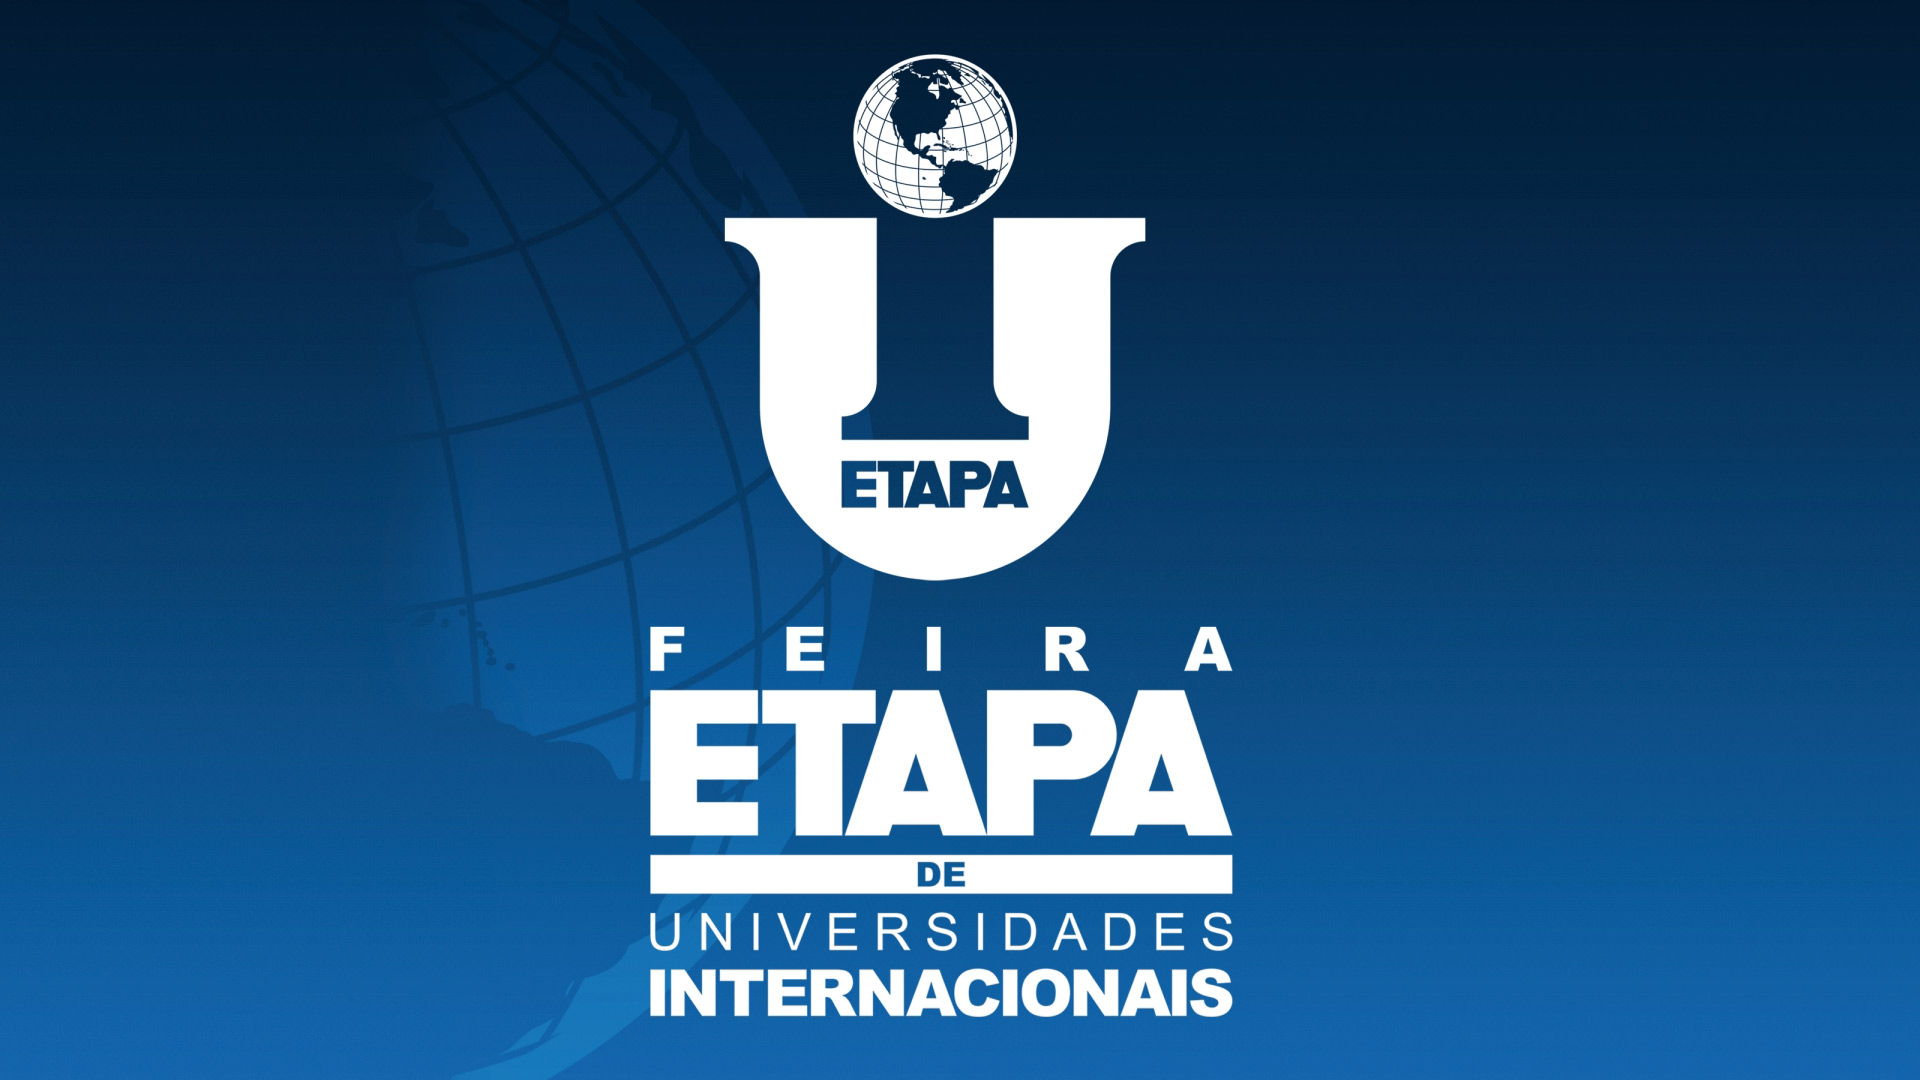 Colegio-Etapa-promove-3a-edicao-da-Feira-Etapa-de-Universidades-Internacionais